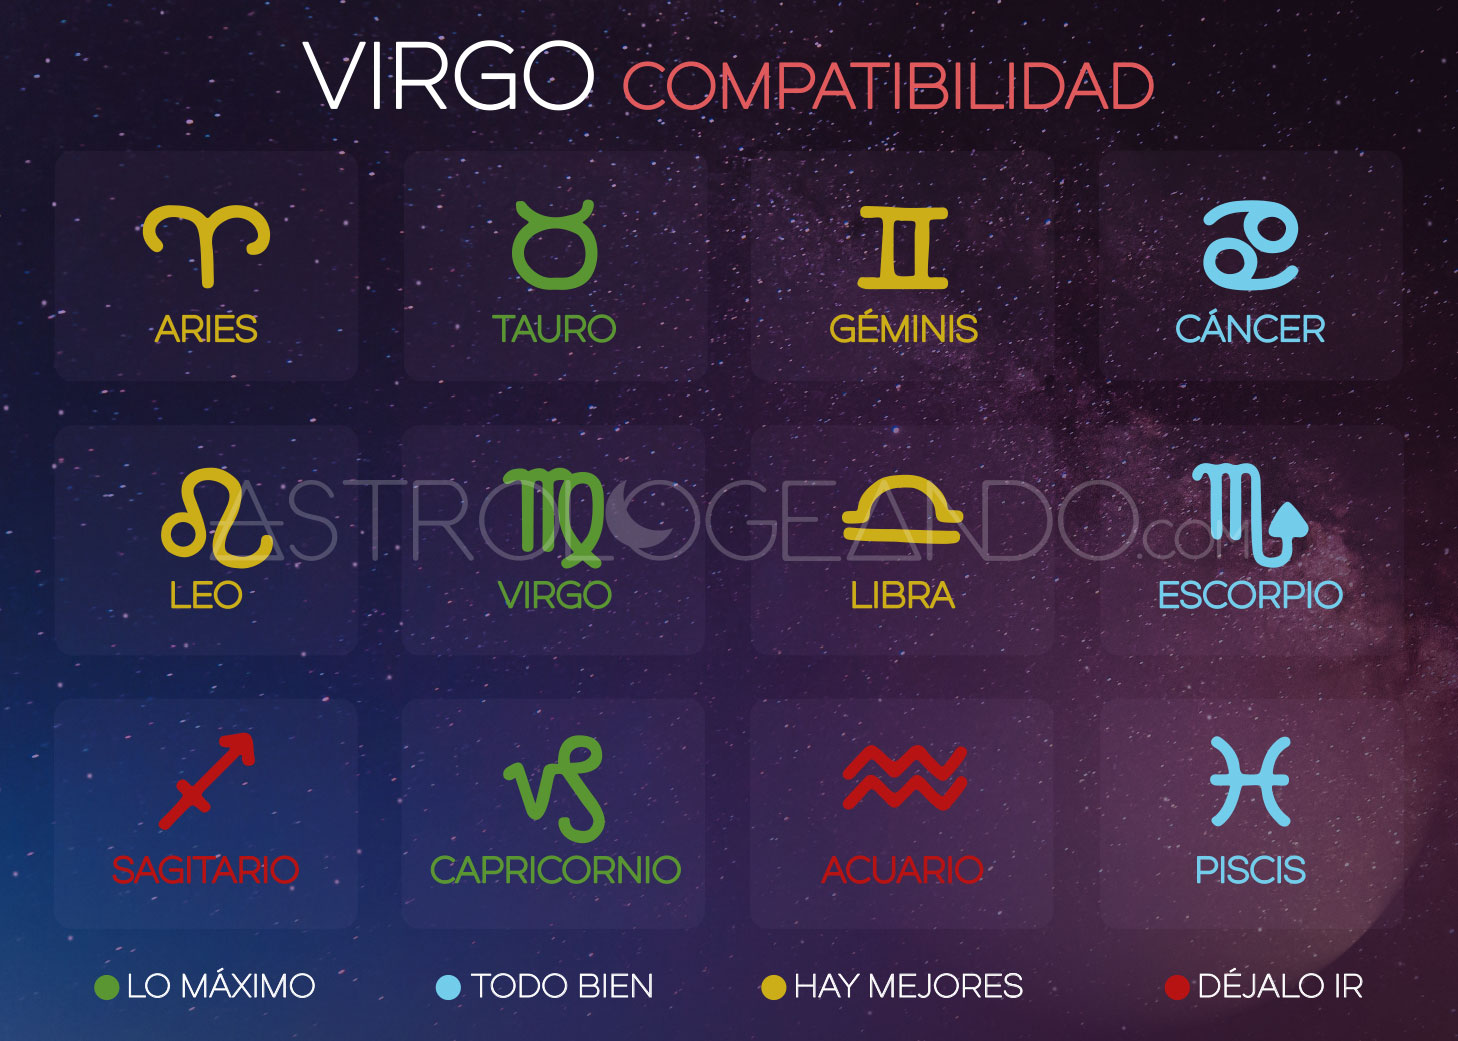 Virgo: Compatibilidad